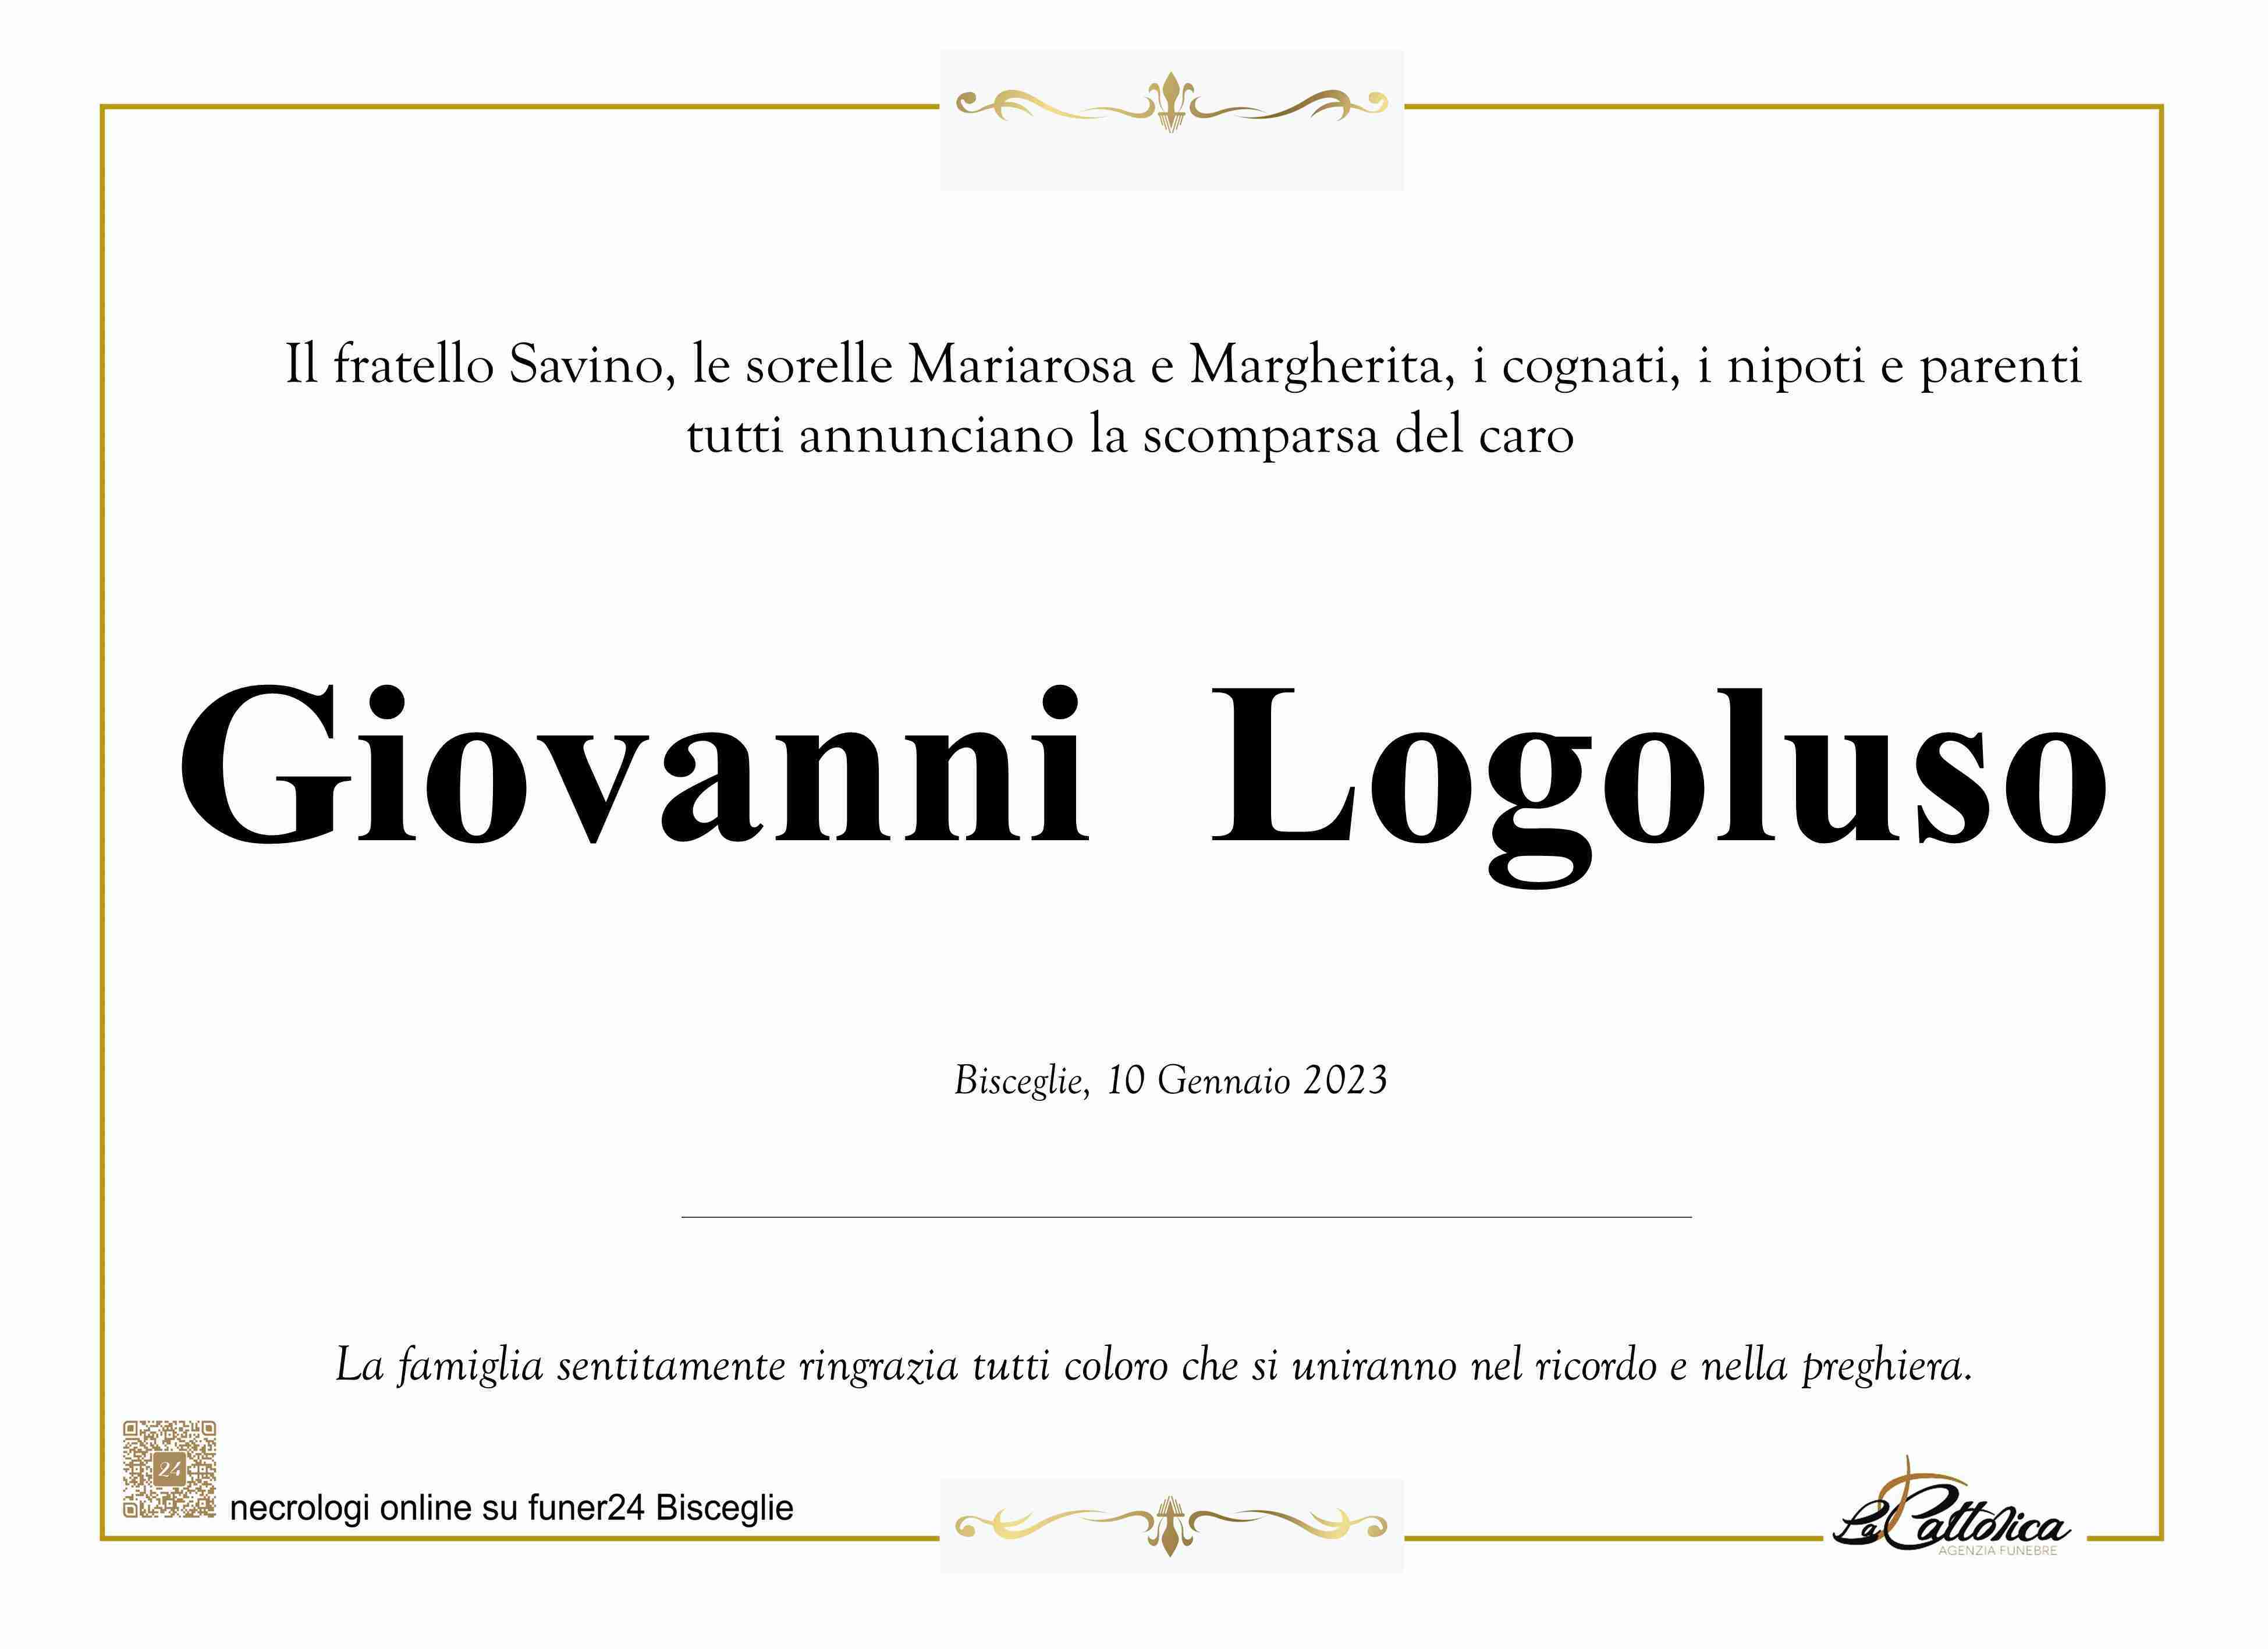 Giovanni Logoluso